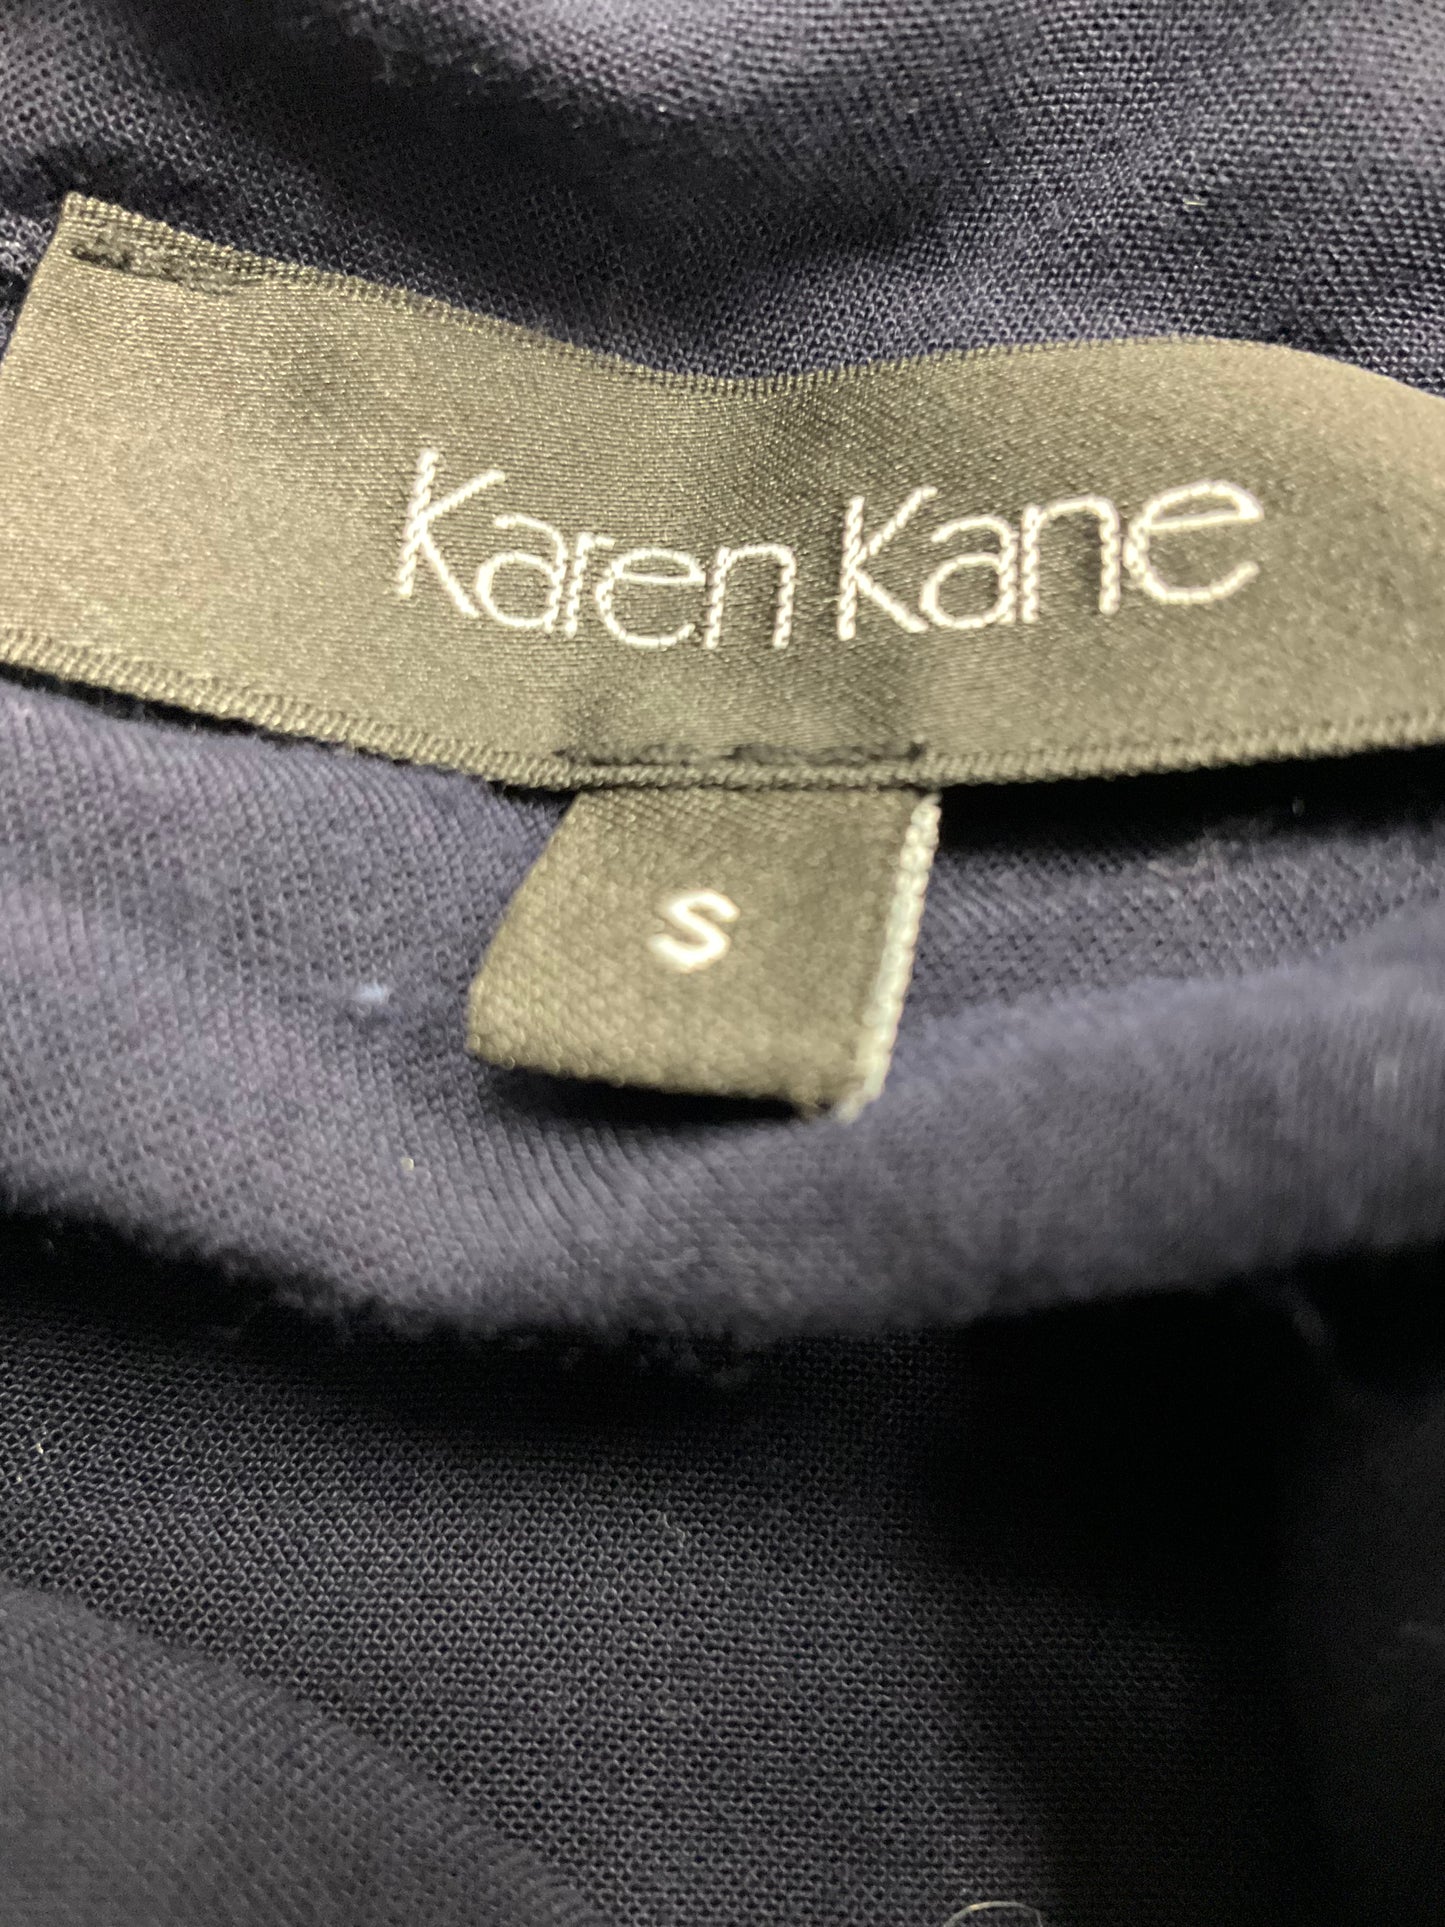 Top Sleeveless By Karen Kane  Size: S